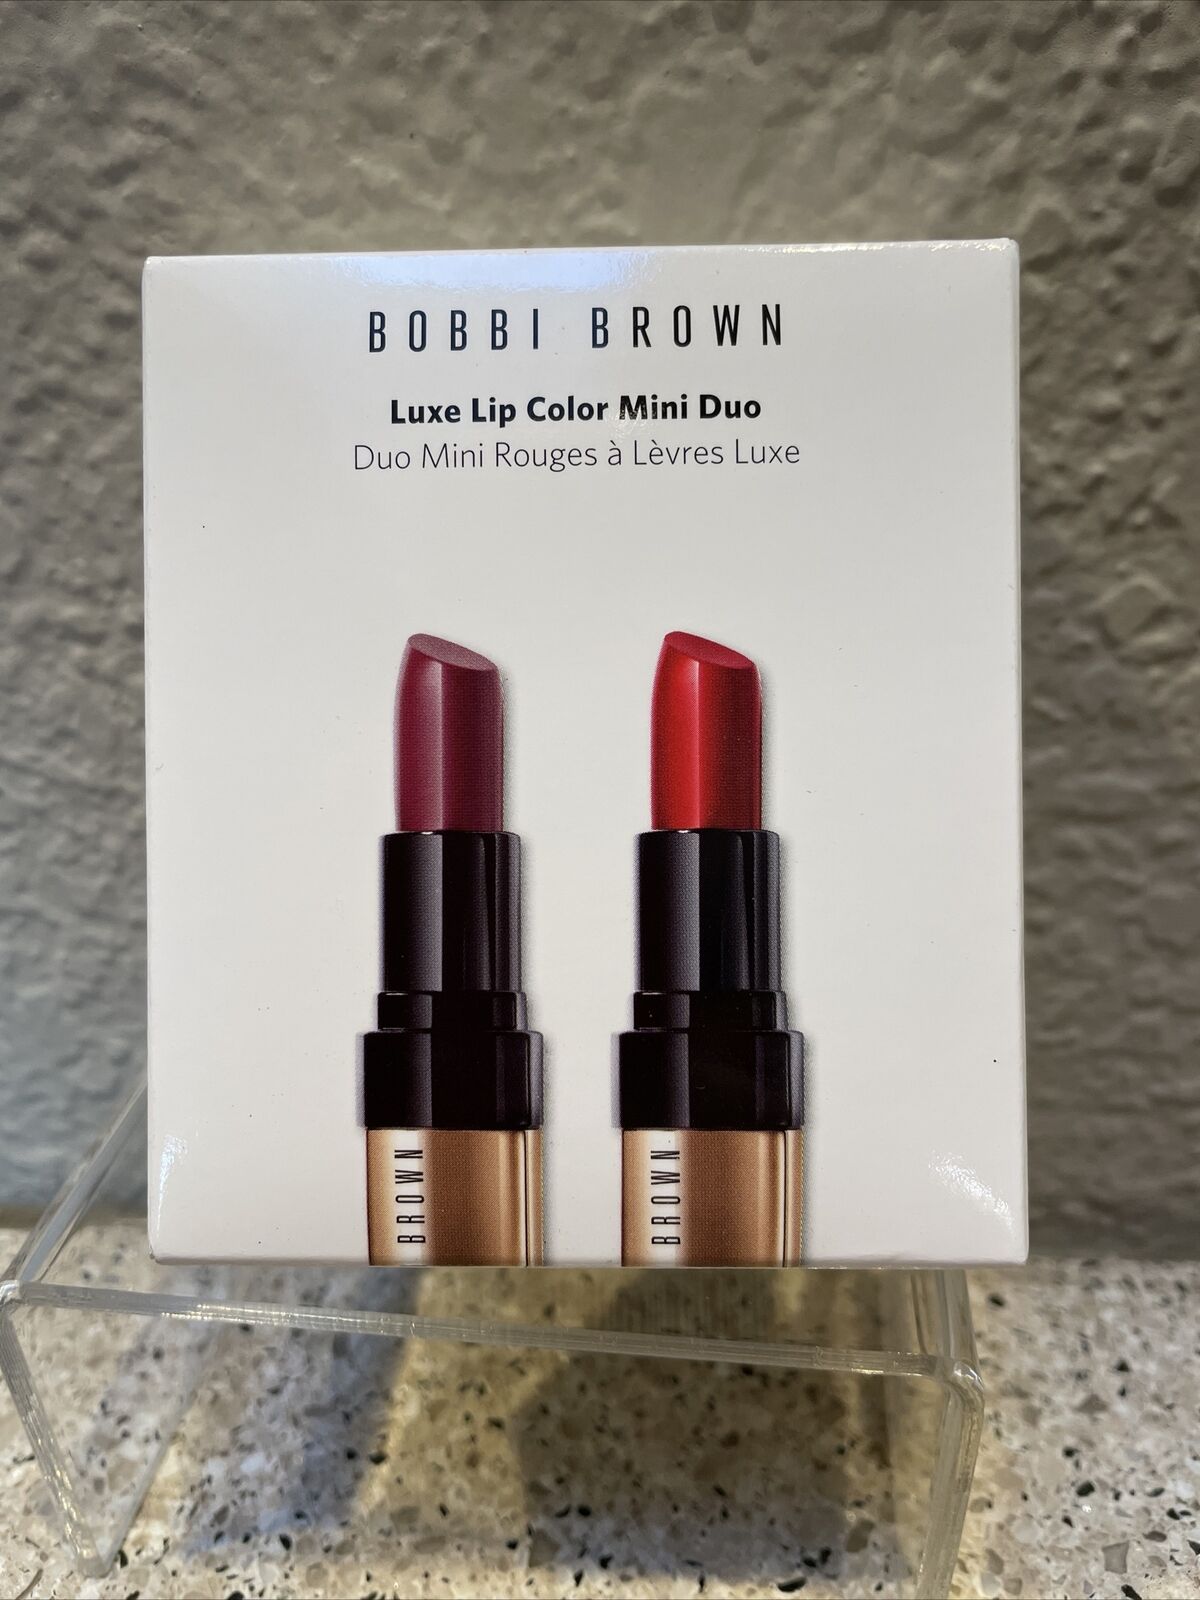 Suradam Nedrustning Politik Bobbi Brown Mini Luxe Lip Color Duo 28 Parisian Red & 18 Hibiscus 2.5 g  Each 716170274478 | eBay